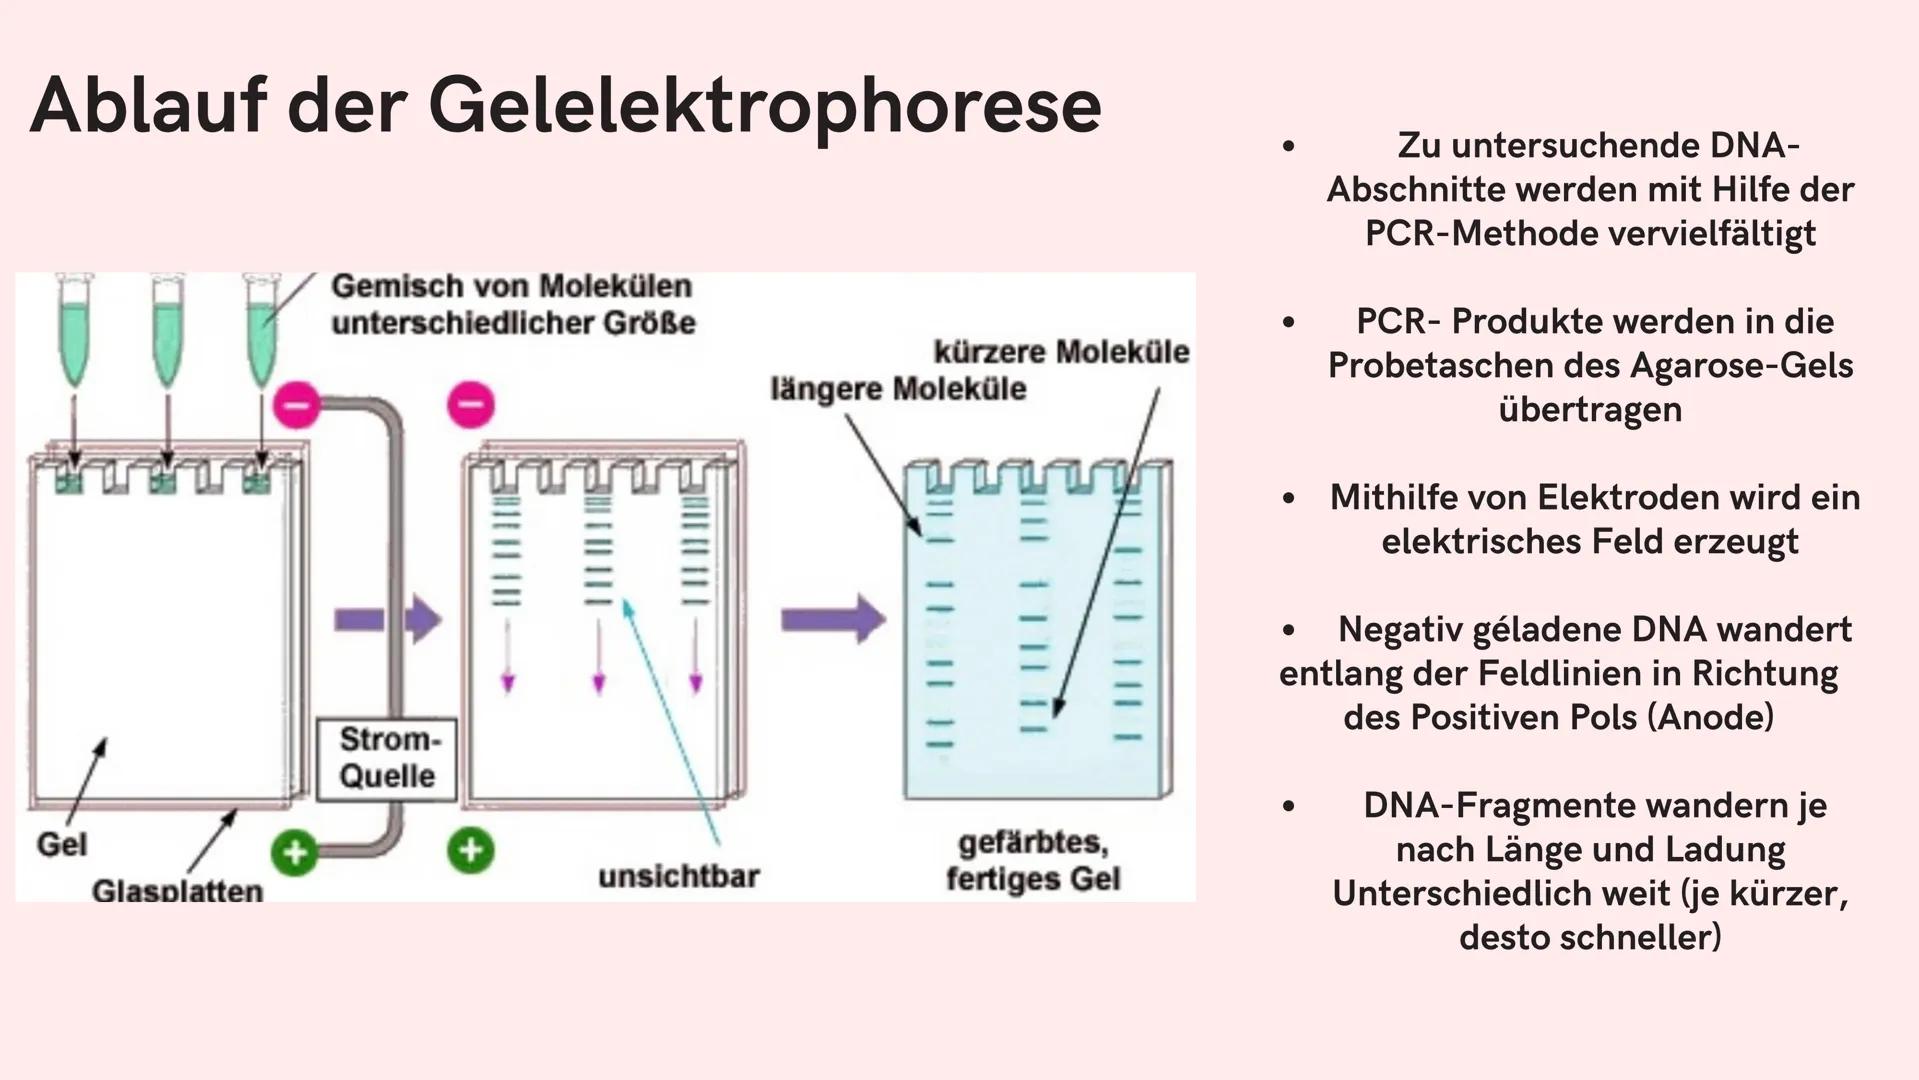 Si
Gelelektrophorese
Biologie GK
Nejla Balic Inhaltsverzeichnis
-Definition
-Verwendung
-Material
-Ablauf
-Auswertung
-Quellen Was denkt ihr